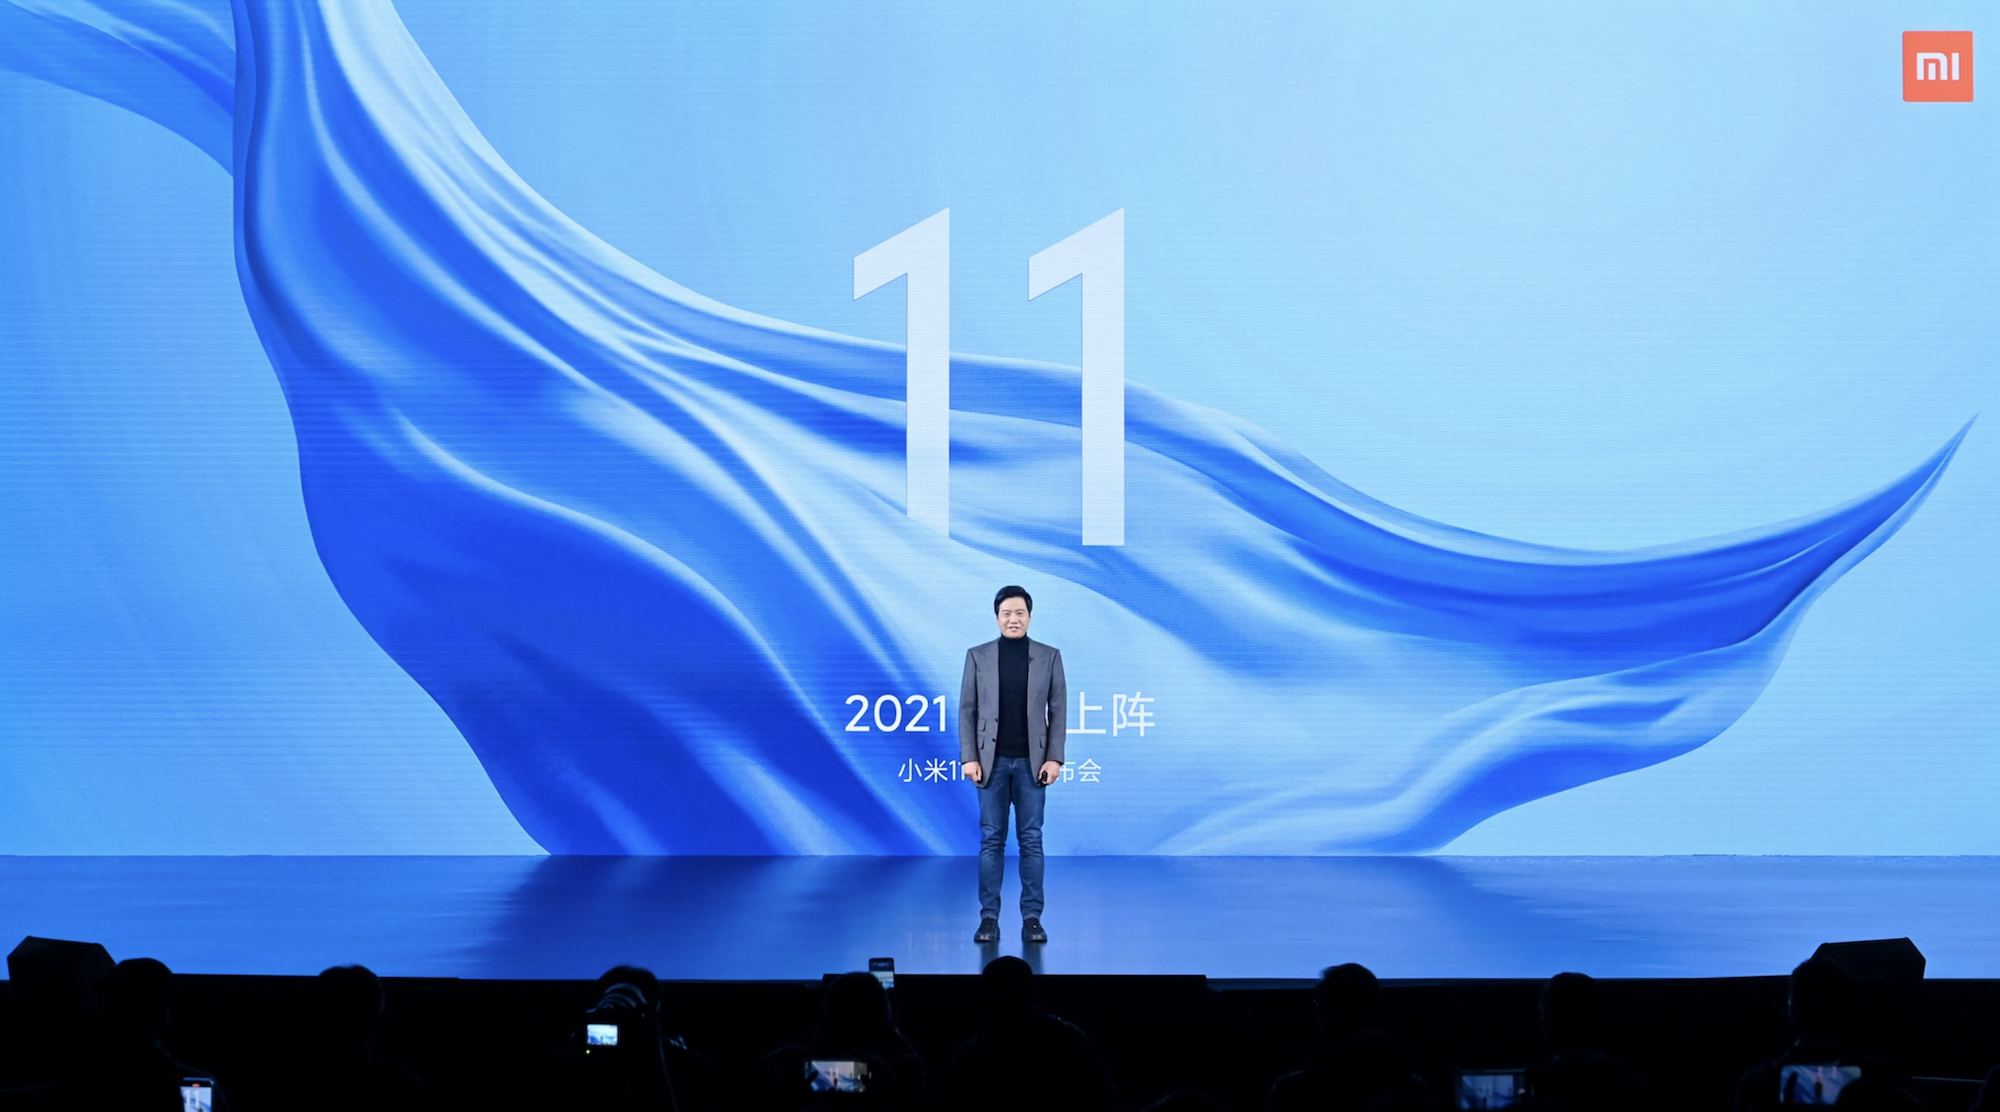 651609155280 .pic hd - Conferenza Xiaomi Mi 11: Mi 11 offre le prestazioni più forti e lo schermo migliore, MIUI 12.5 è il corpo completo